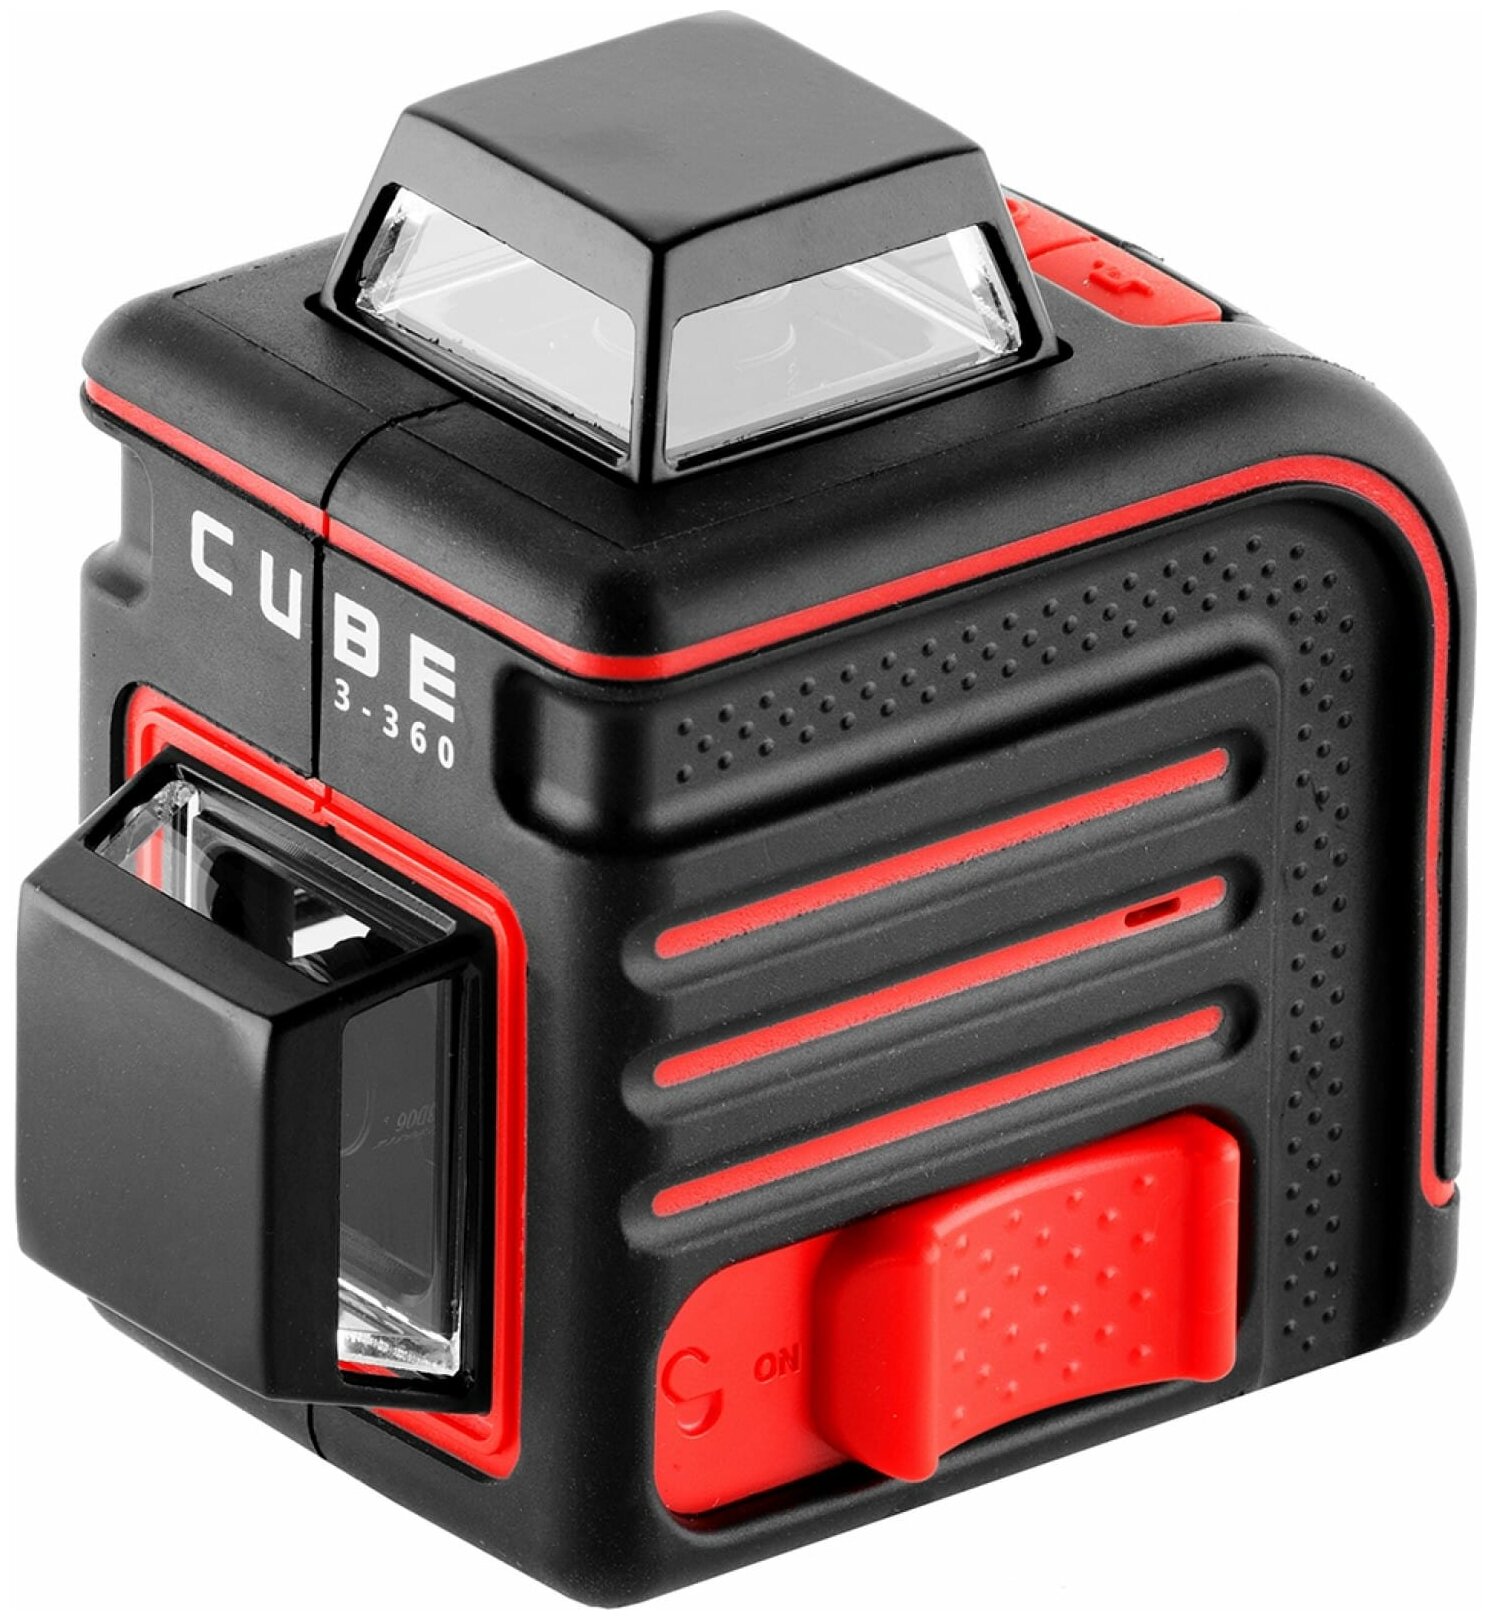 Cube ultimate edition. Лазерный уровень ada Cube 3-360 Basic Edition. Лазерный уровень ada Cube 3-360 professional Edition а00572. Ada Cube 3-360 Basic Edition а00559. Лазерный уровень ada Cube 3-360 Home Edition а00565.